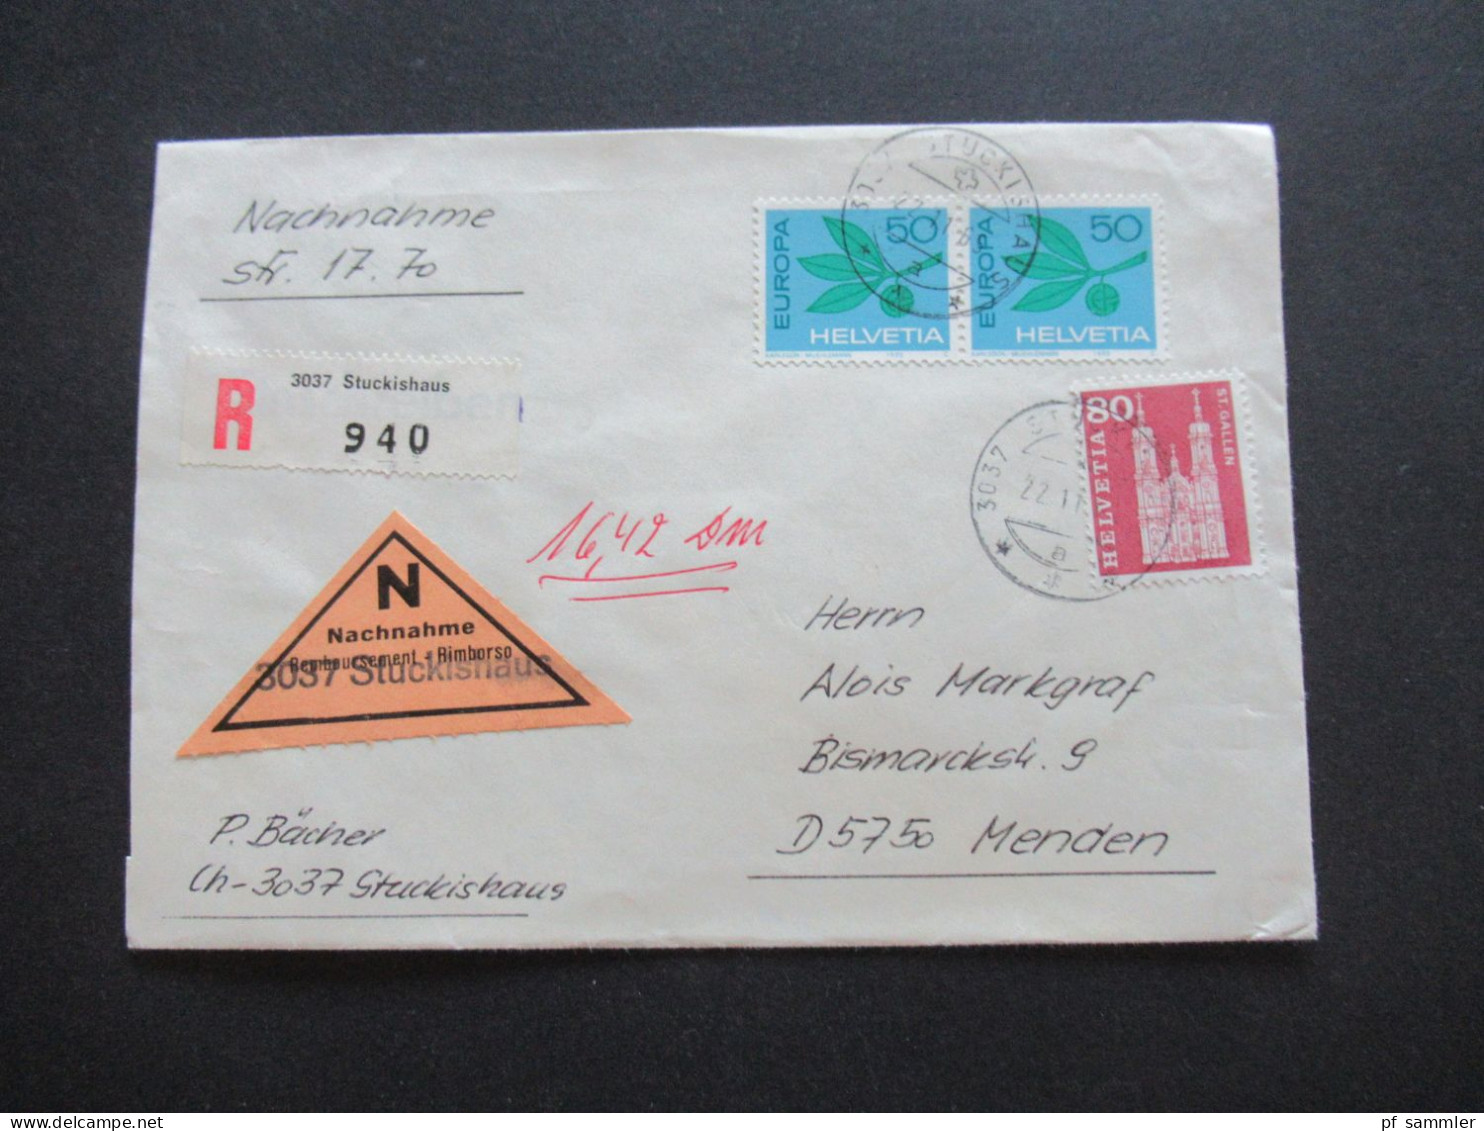 Schweiz 1965 Einschreiben Nachnahme Gestempelter Remboursement Nachnahme Zettel Mit L1 3037 Stuckishaus - Covers & Documents